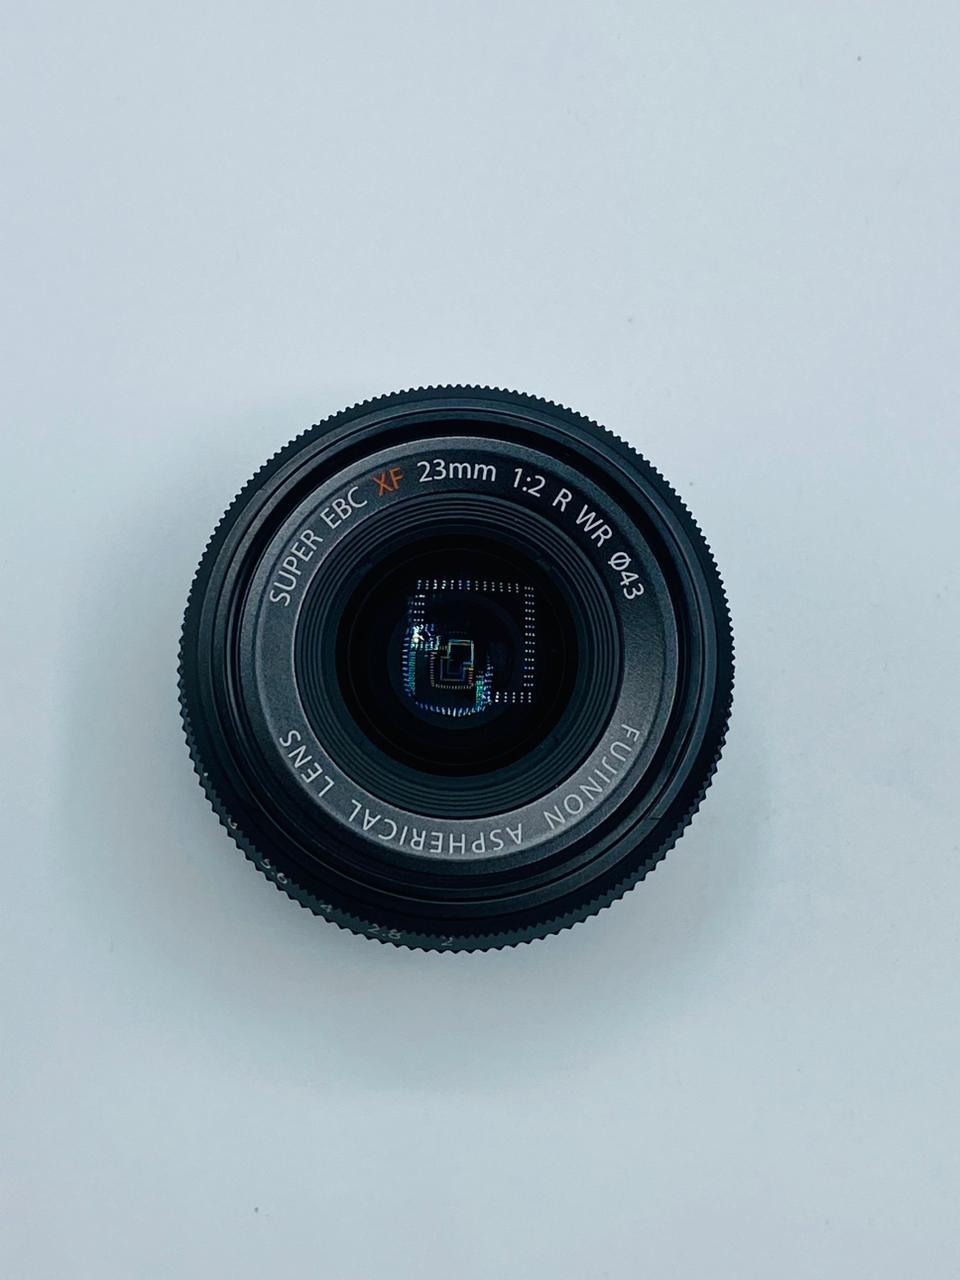 Fuji 23mm F2 used (7cA04031)